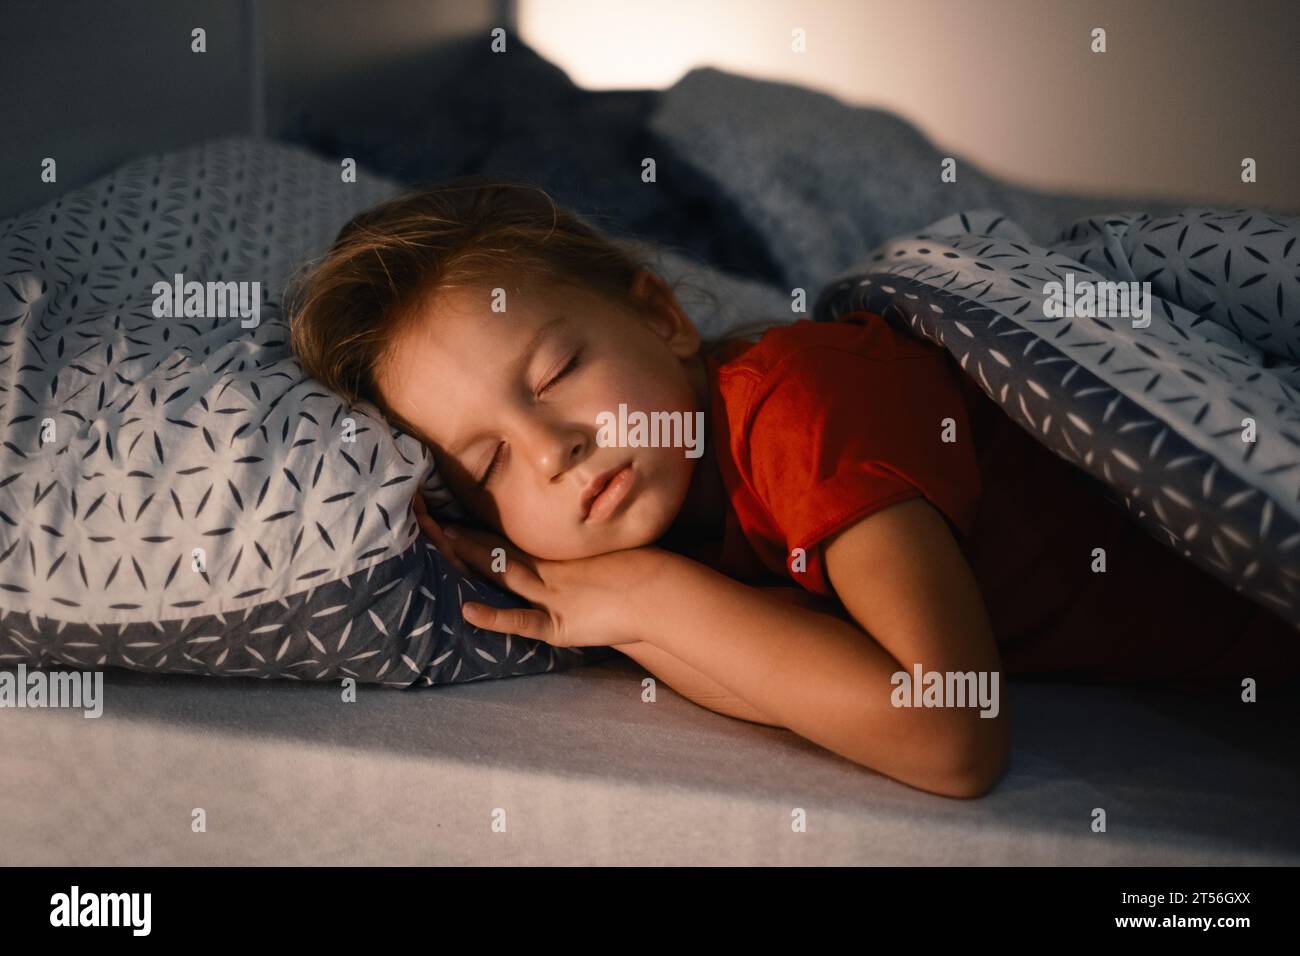 Enfant dormant dans le lit tard dans la nuit. Coussin mignon pour petite fille recouvert d'une couverture chaude. Enfant ayant le repos de nuit. Lumière sur la table de nuit Banque D'Images